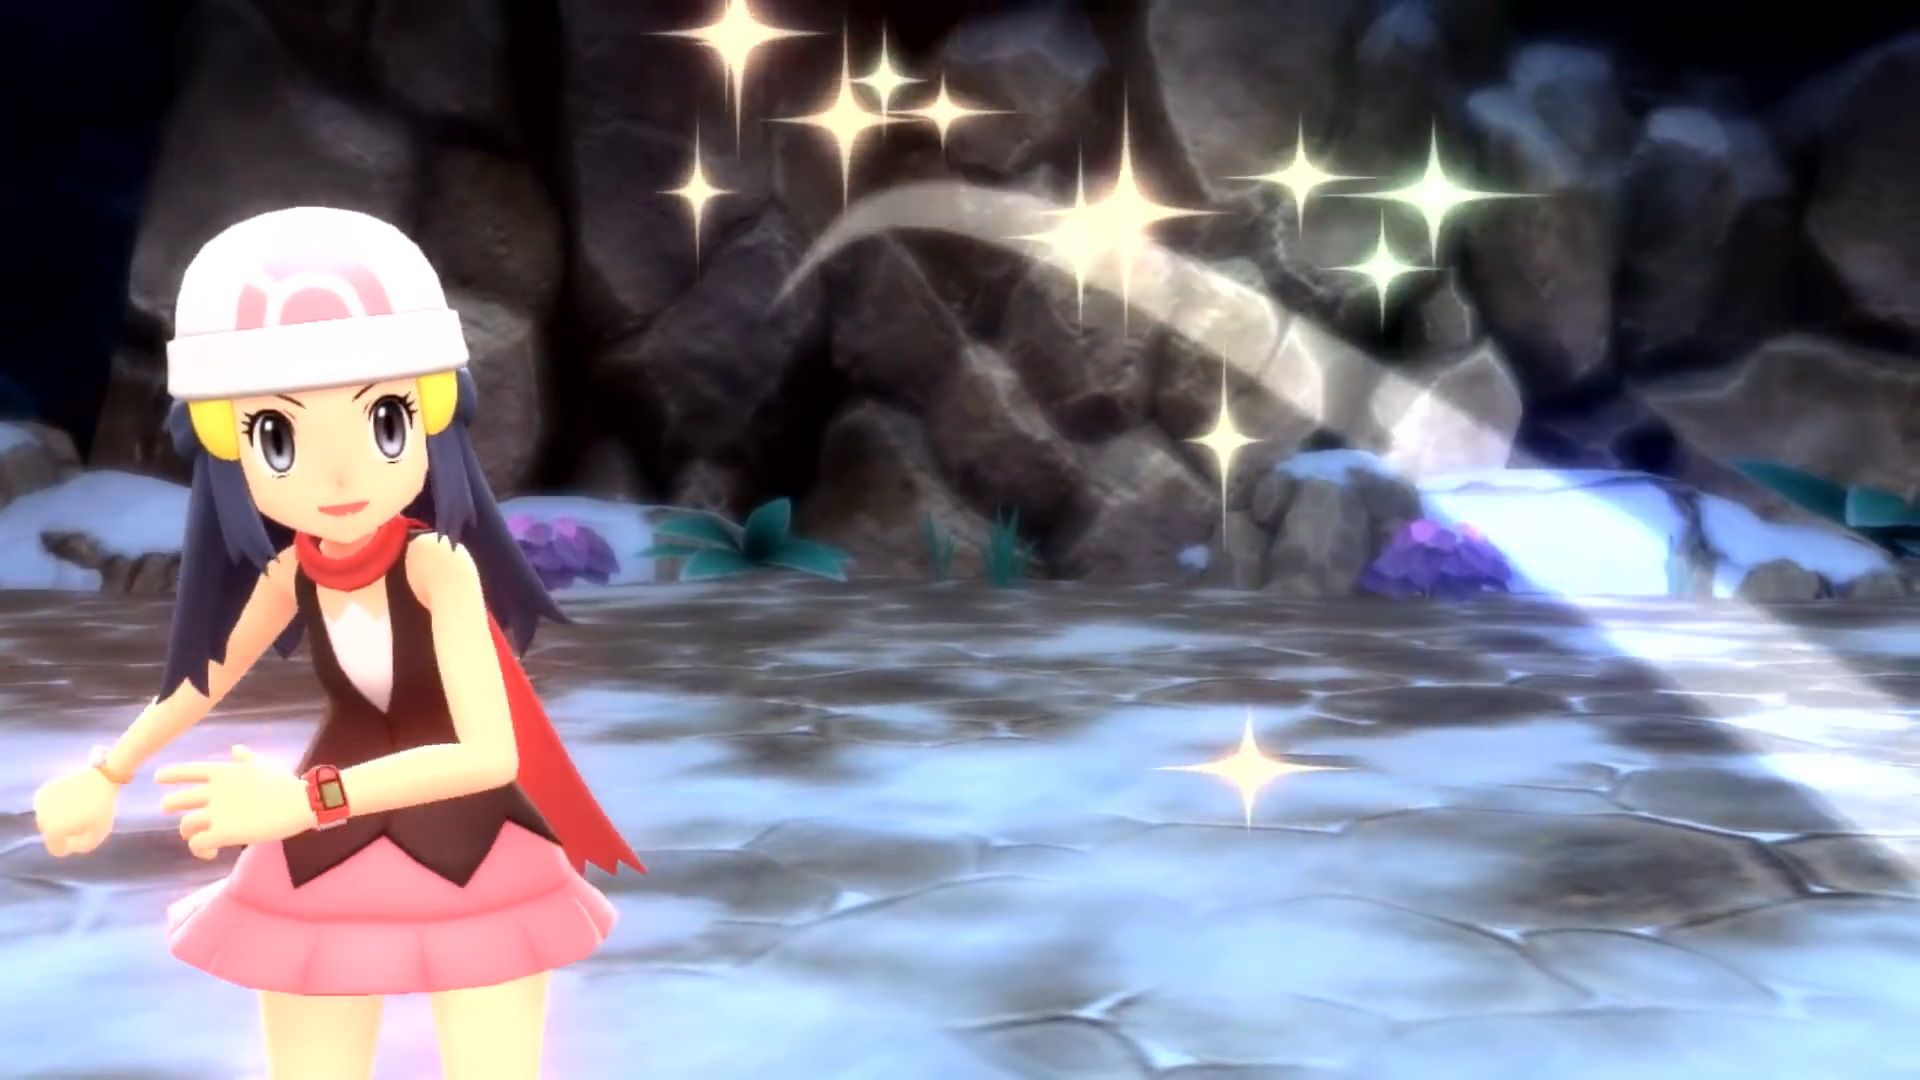 Pokemon Brilliant Diamond and Shining Pearl Should Improve Contests